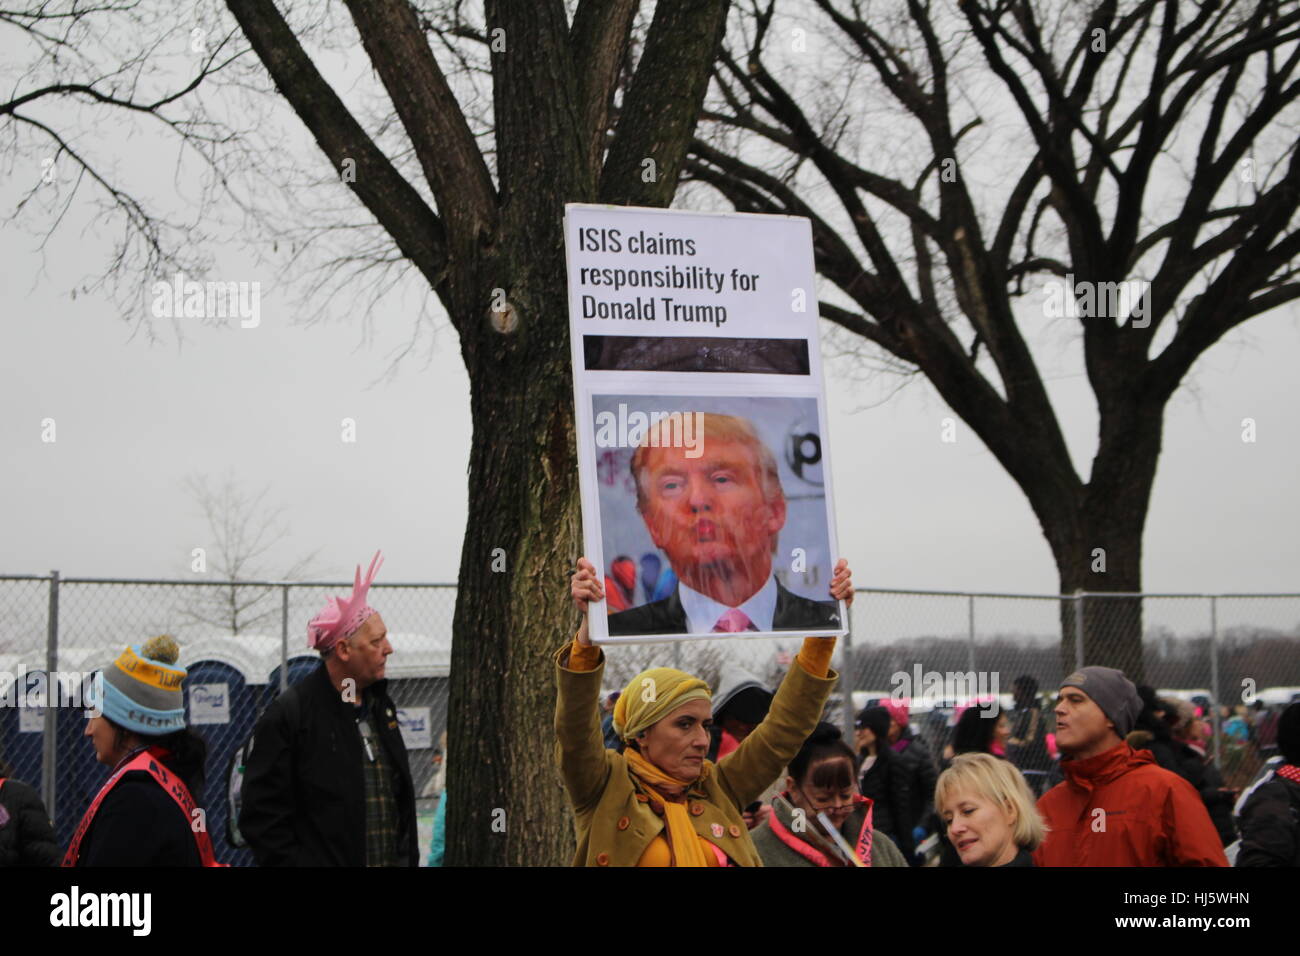 Distrikt von Columbia, USA. 21 Jan, 2017. Hält eine Frau ein satirisches Zeichen in Form einer Parodie Artikel mit einem Bild von Präsident Donald Trump unter ISIS beansprucht die Verantwortung die Worte "Donald Trump'. Stockfoto